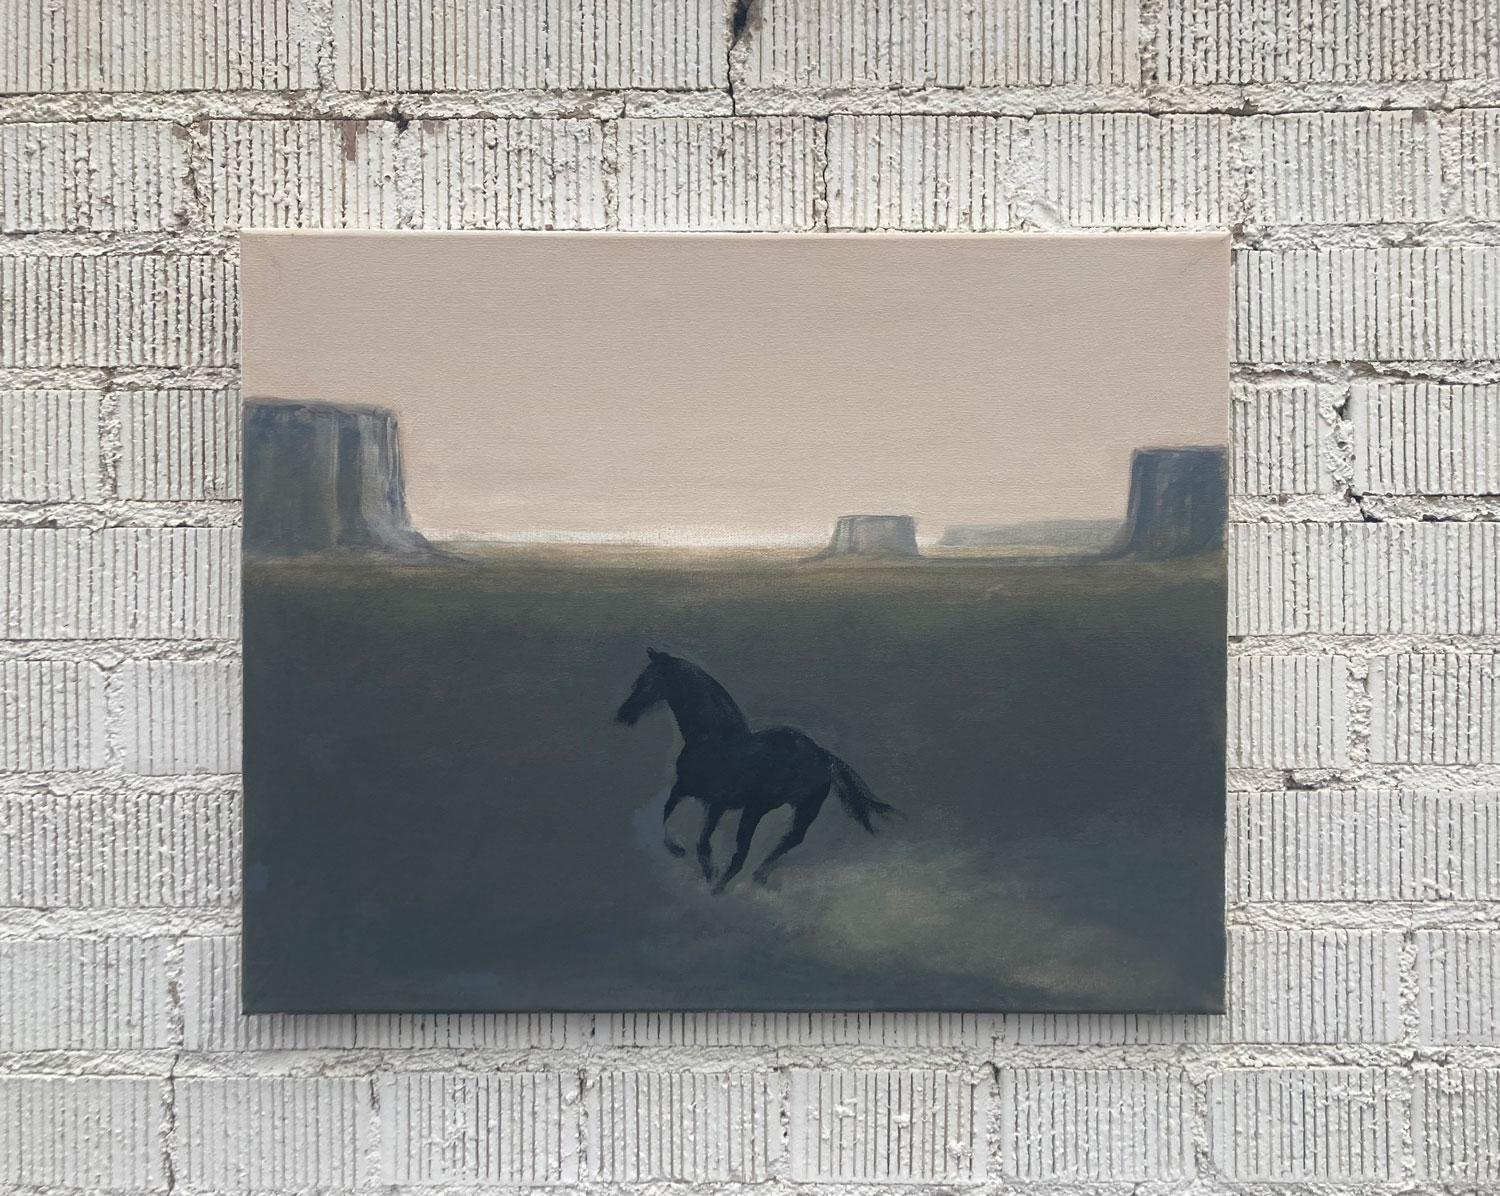 <p>Kommentare des Künstlers<br>Der Künstler Nick Bontorno malt ein schwarzes Pferd, das auf die fernen Wüstenklippen zuläuft. Er gibt das Thema mit minimaler Darstellung im Stil des Primitivismus wieder. Die Palette aus weichen Pastellfarben und die